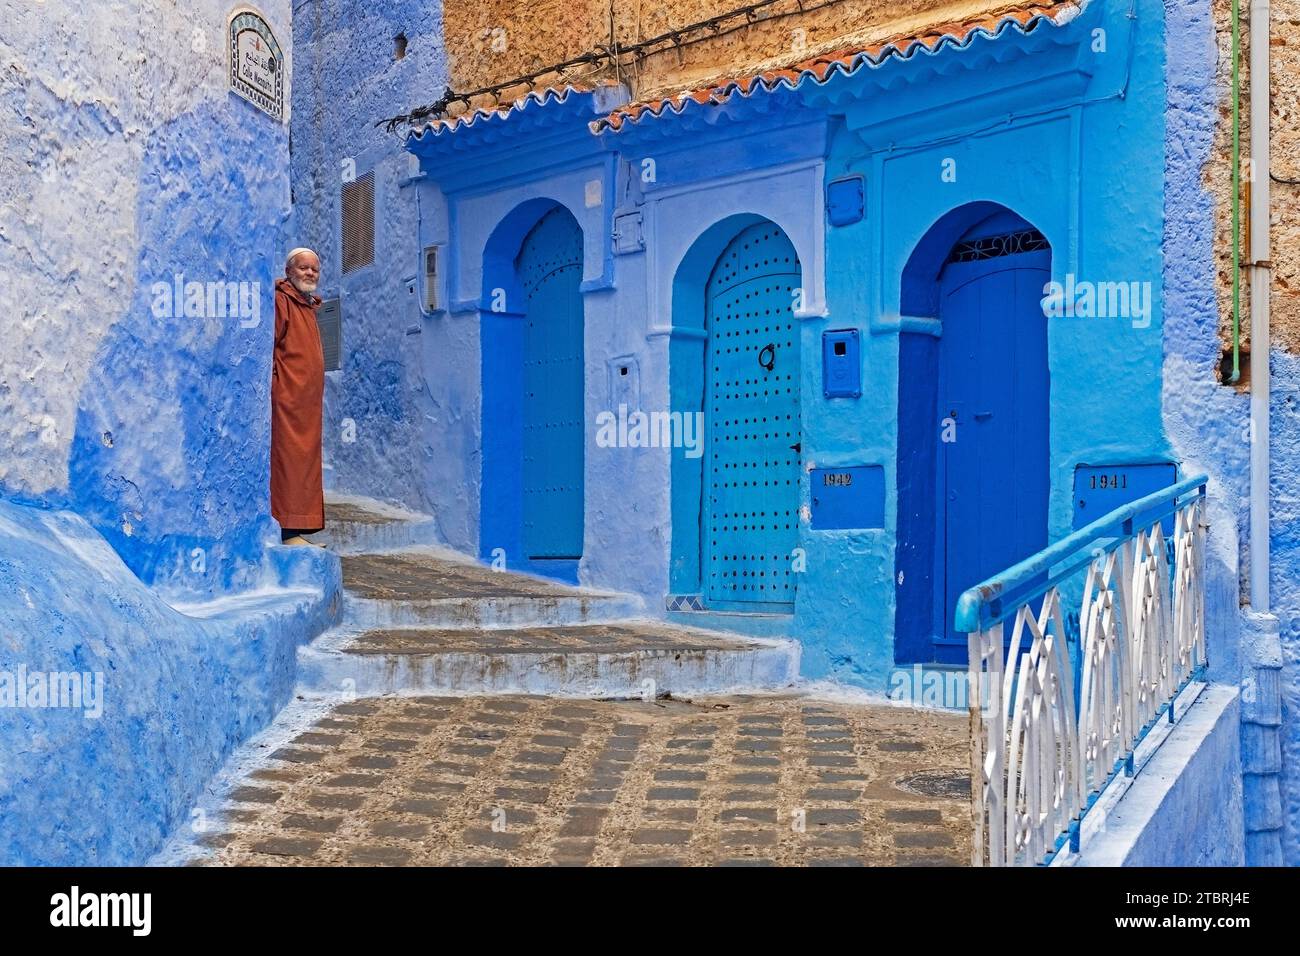 Muslimischer Mann mit traditioneller Djellaba in einer Gasse mit blauen Häusern und Türen in Medina / historischer Altstadt Chefchaouen / Chaouen, Marokko Stockfoto